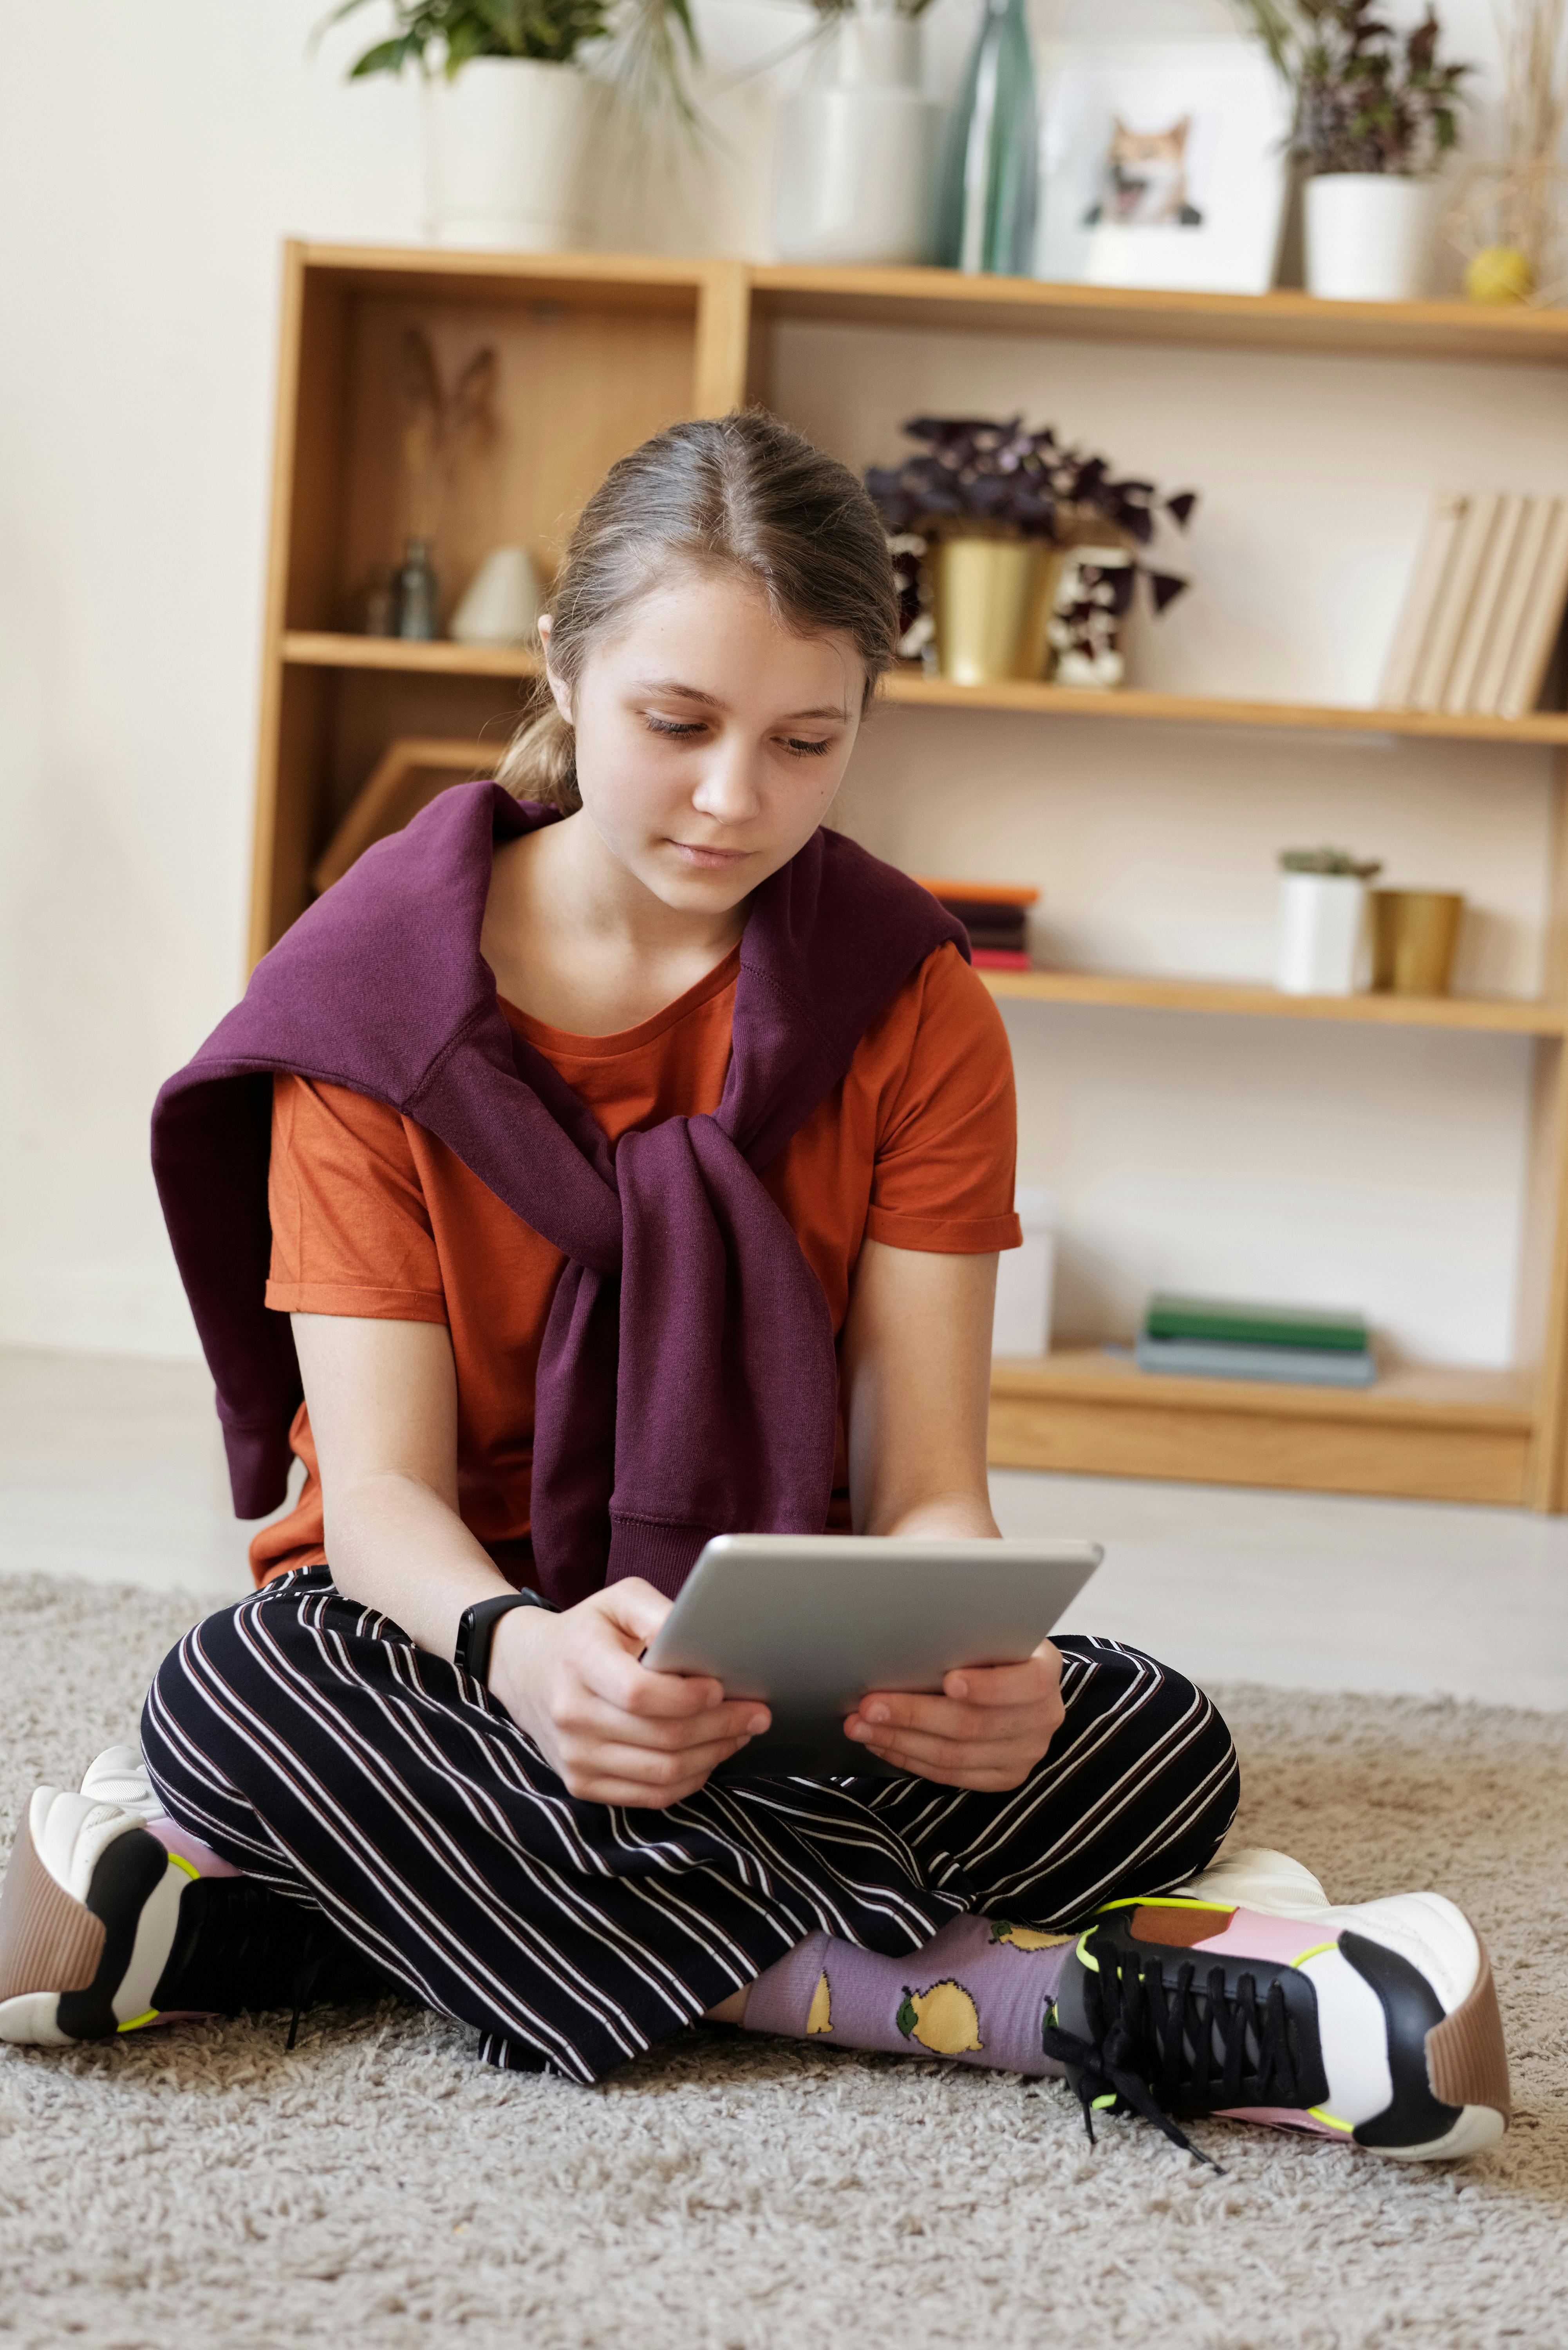 Ein Mädchen im Teenageralter sitzt auf dem Boden und benutzt ein Tablet | Quelle: Pexels